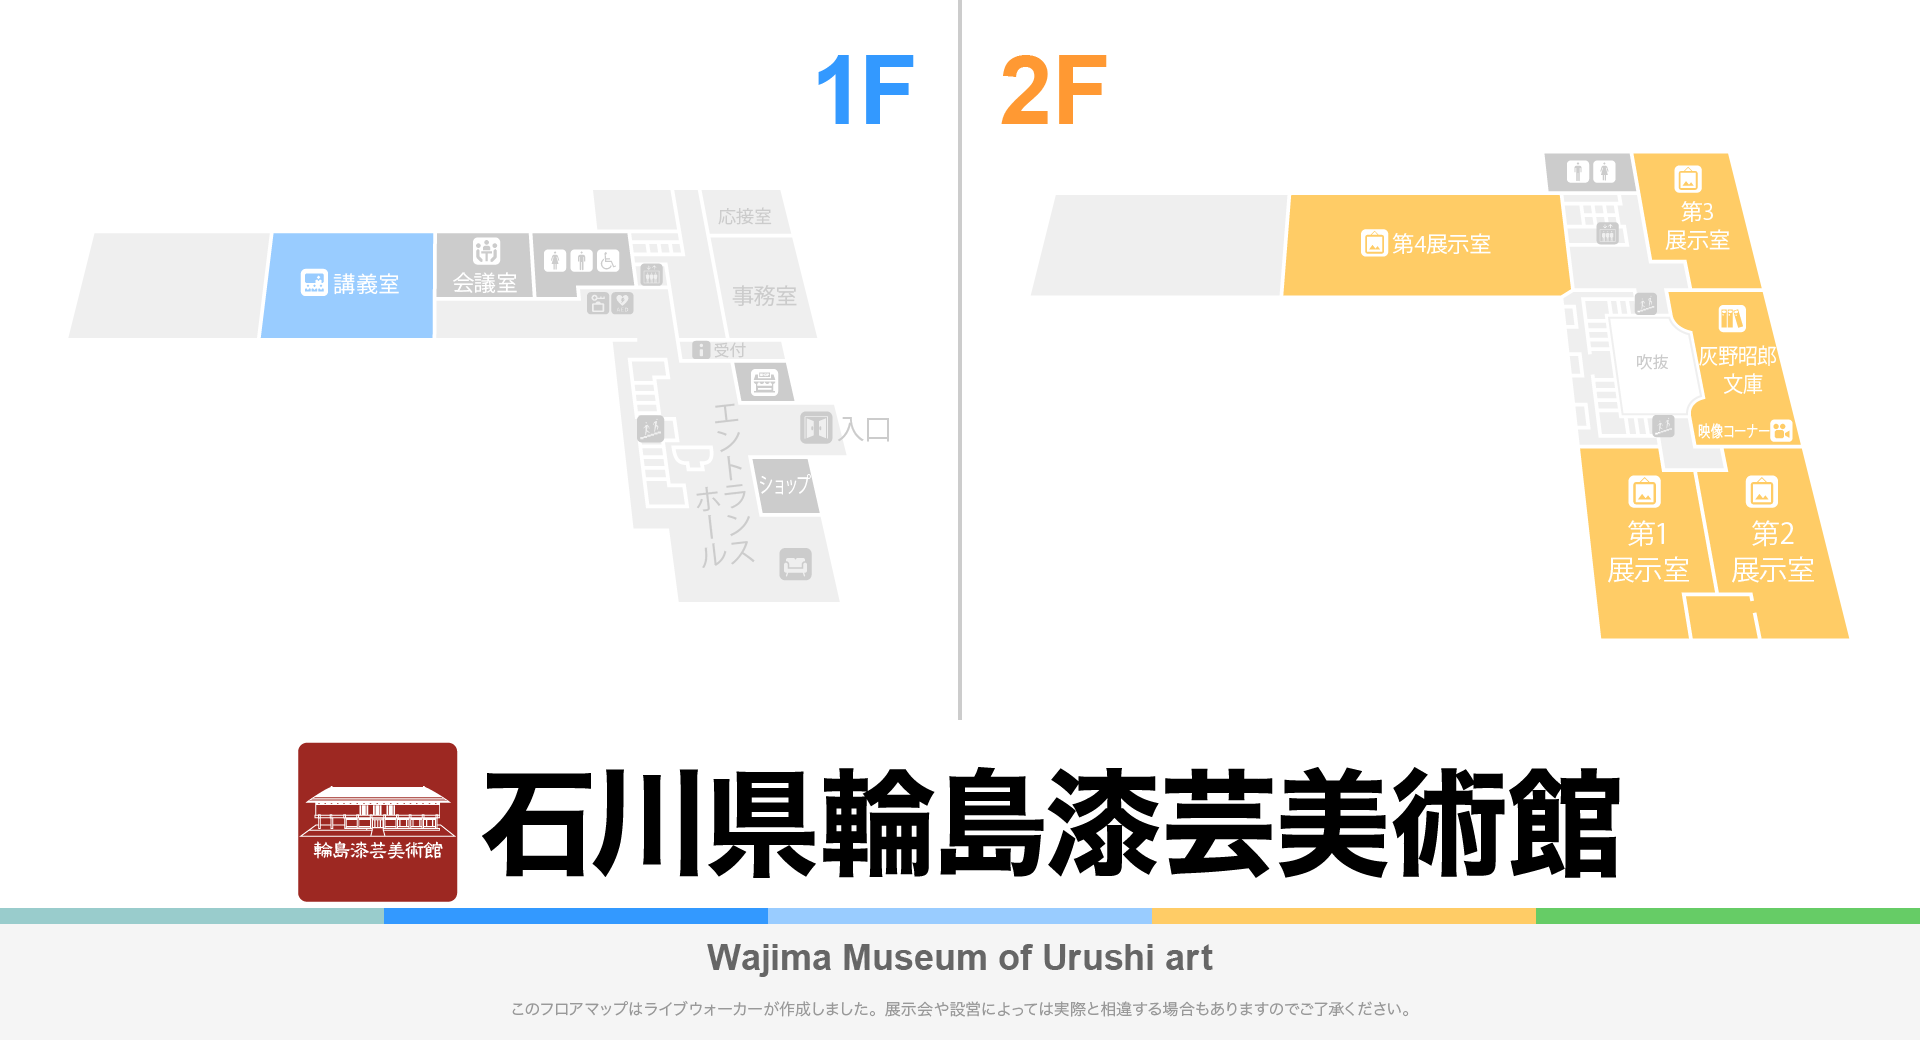 石川県輪島漆芸美術館のフロアマップ